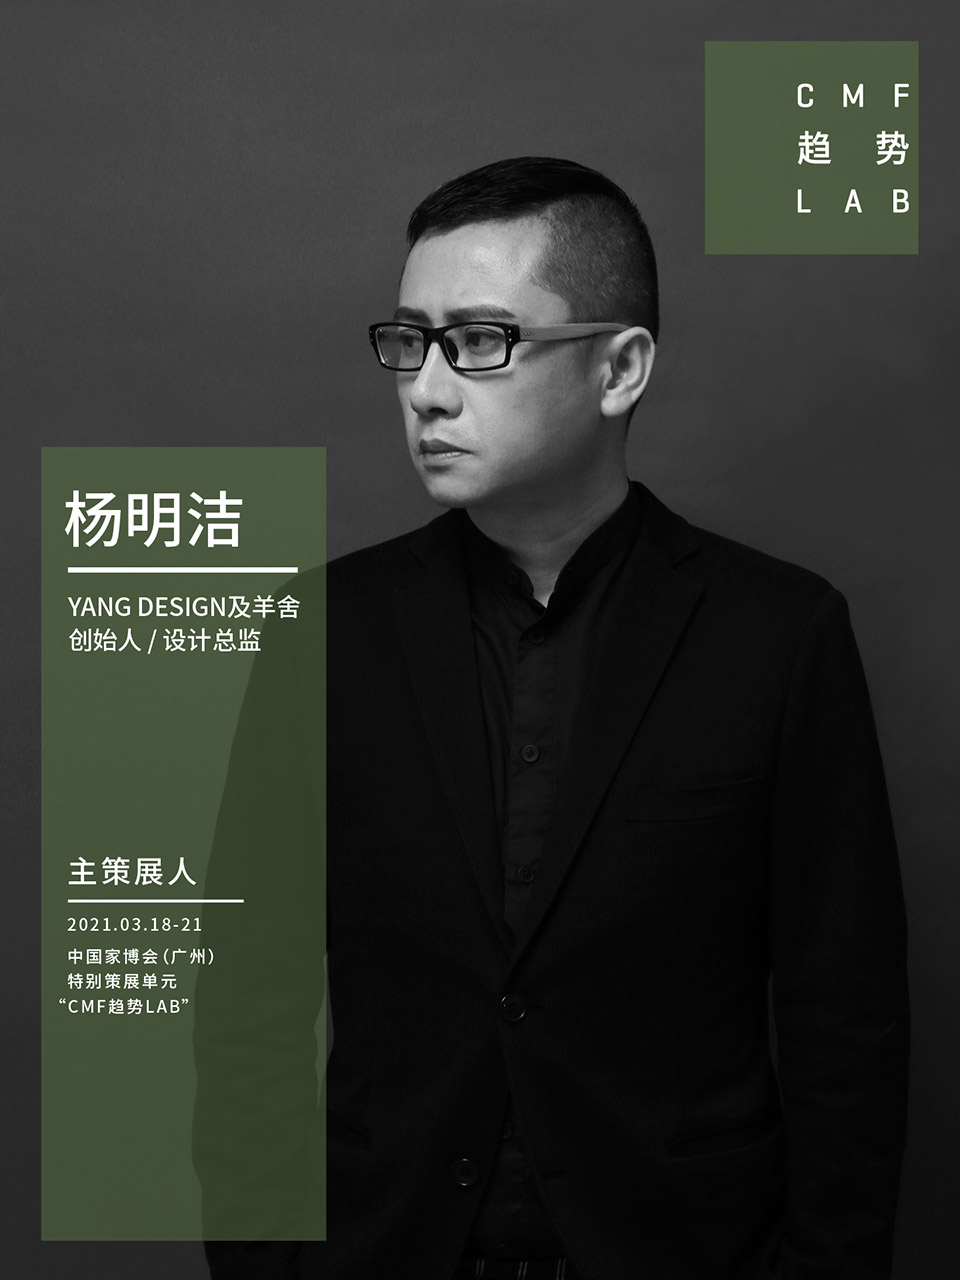 中国家博会“CMF趋势LAB” 四大主题实验室全新发布/“虚拟重构实验室”、“融手艺材料实验室”、“精致懒实验室”、“无废实验室”
-6